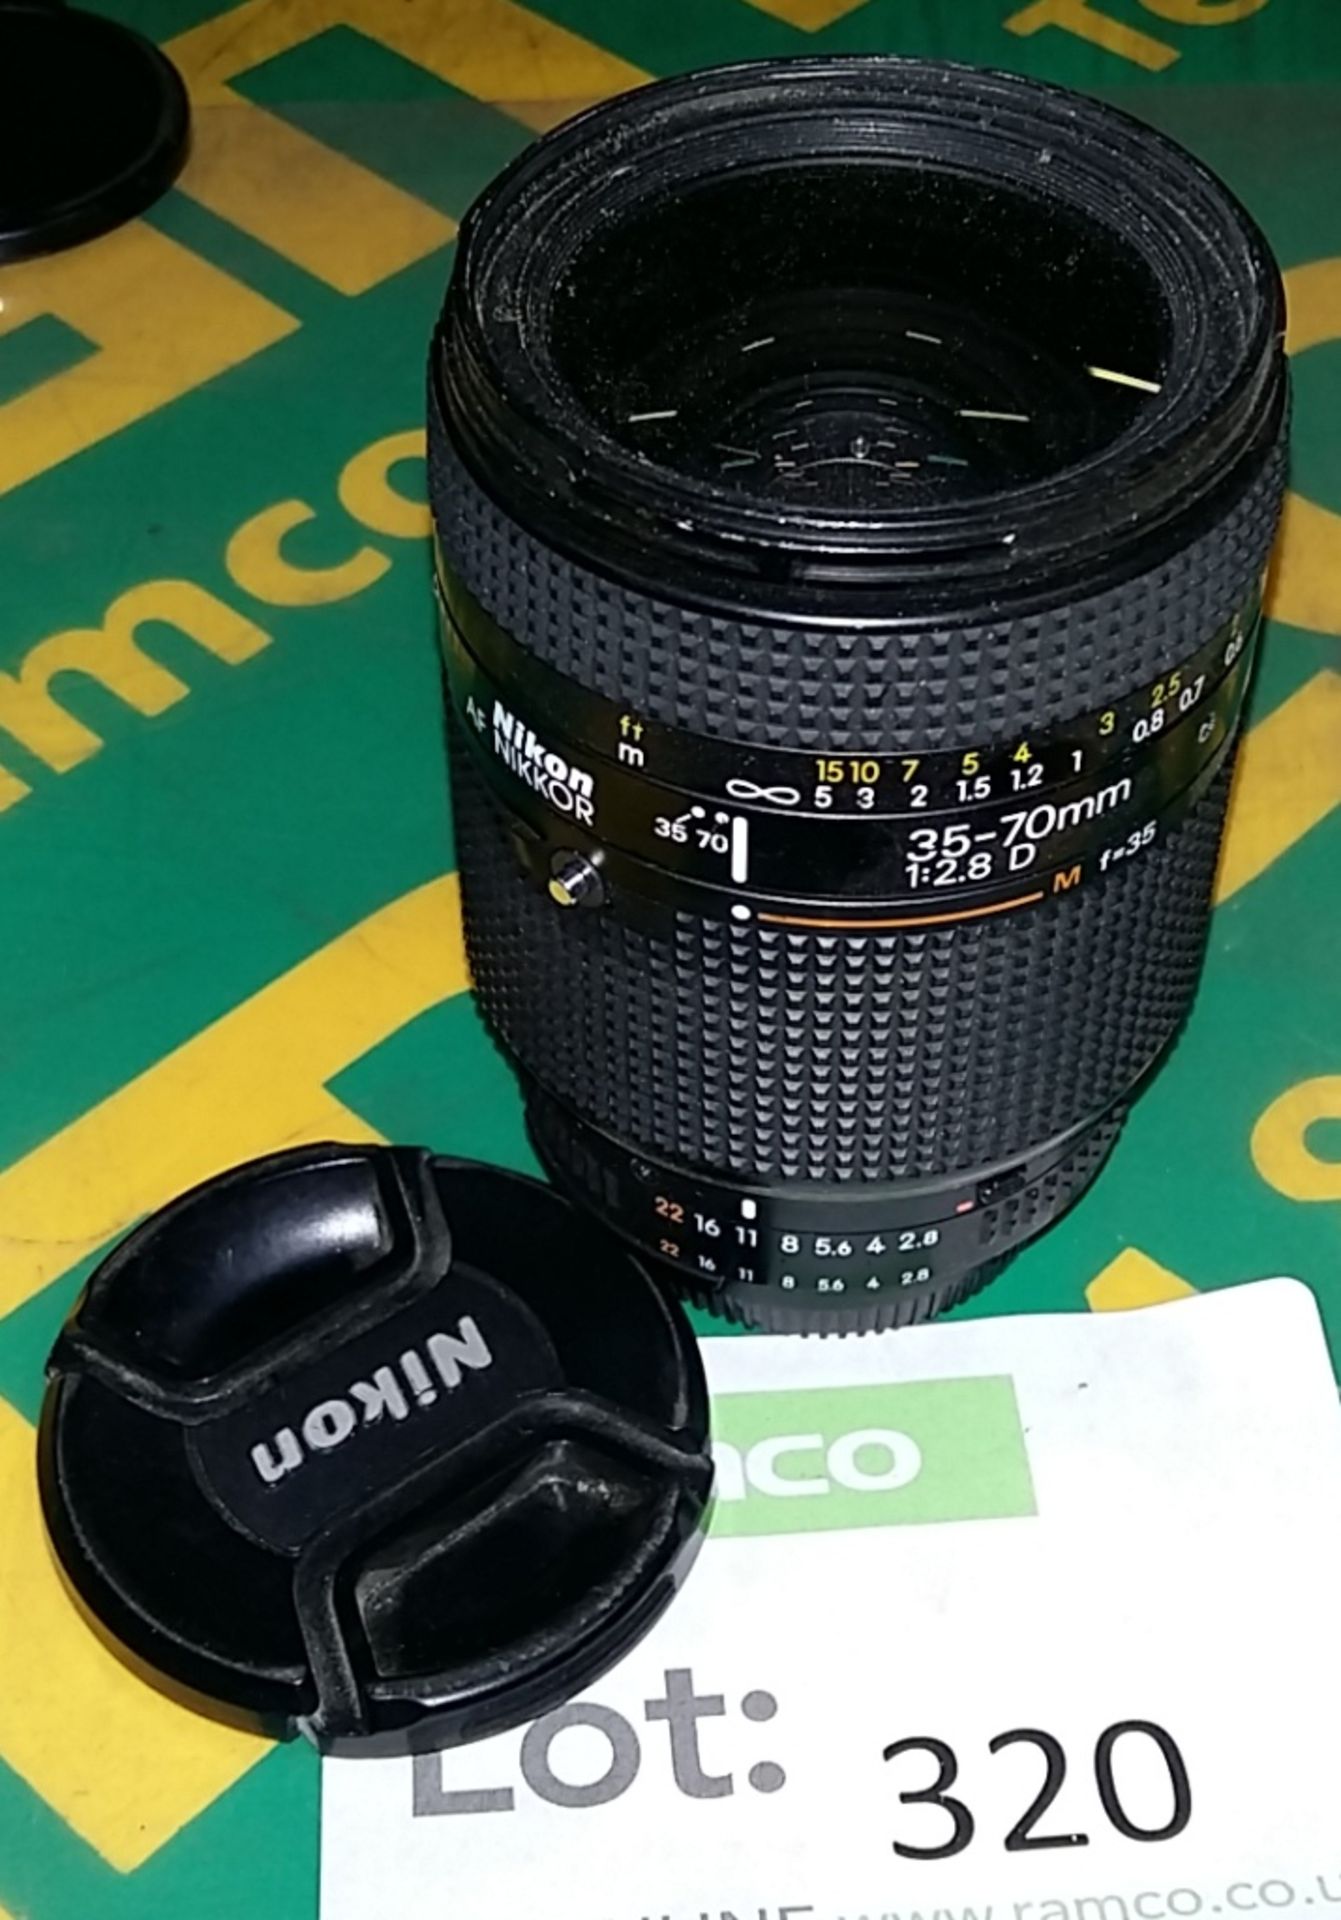 Nikon AF Nikkor 35-70mm 1:2.8D camera lens